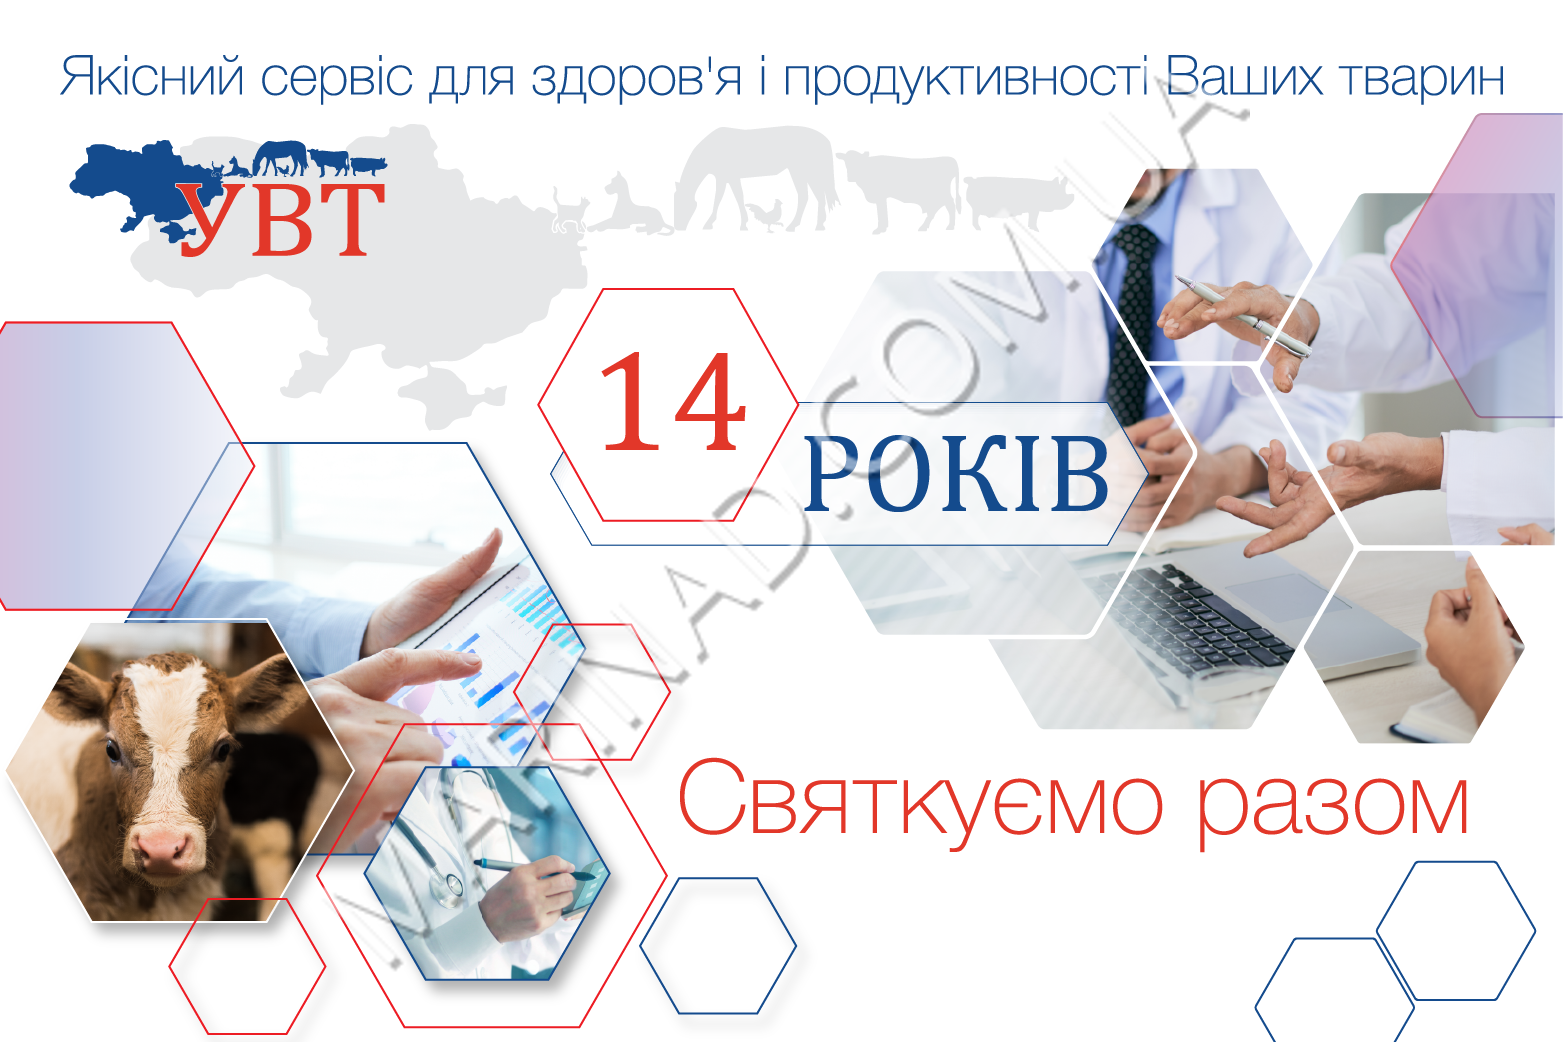 The company “Ukrainian veterinary technologies”